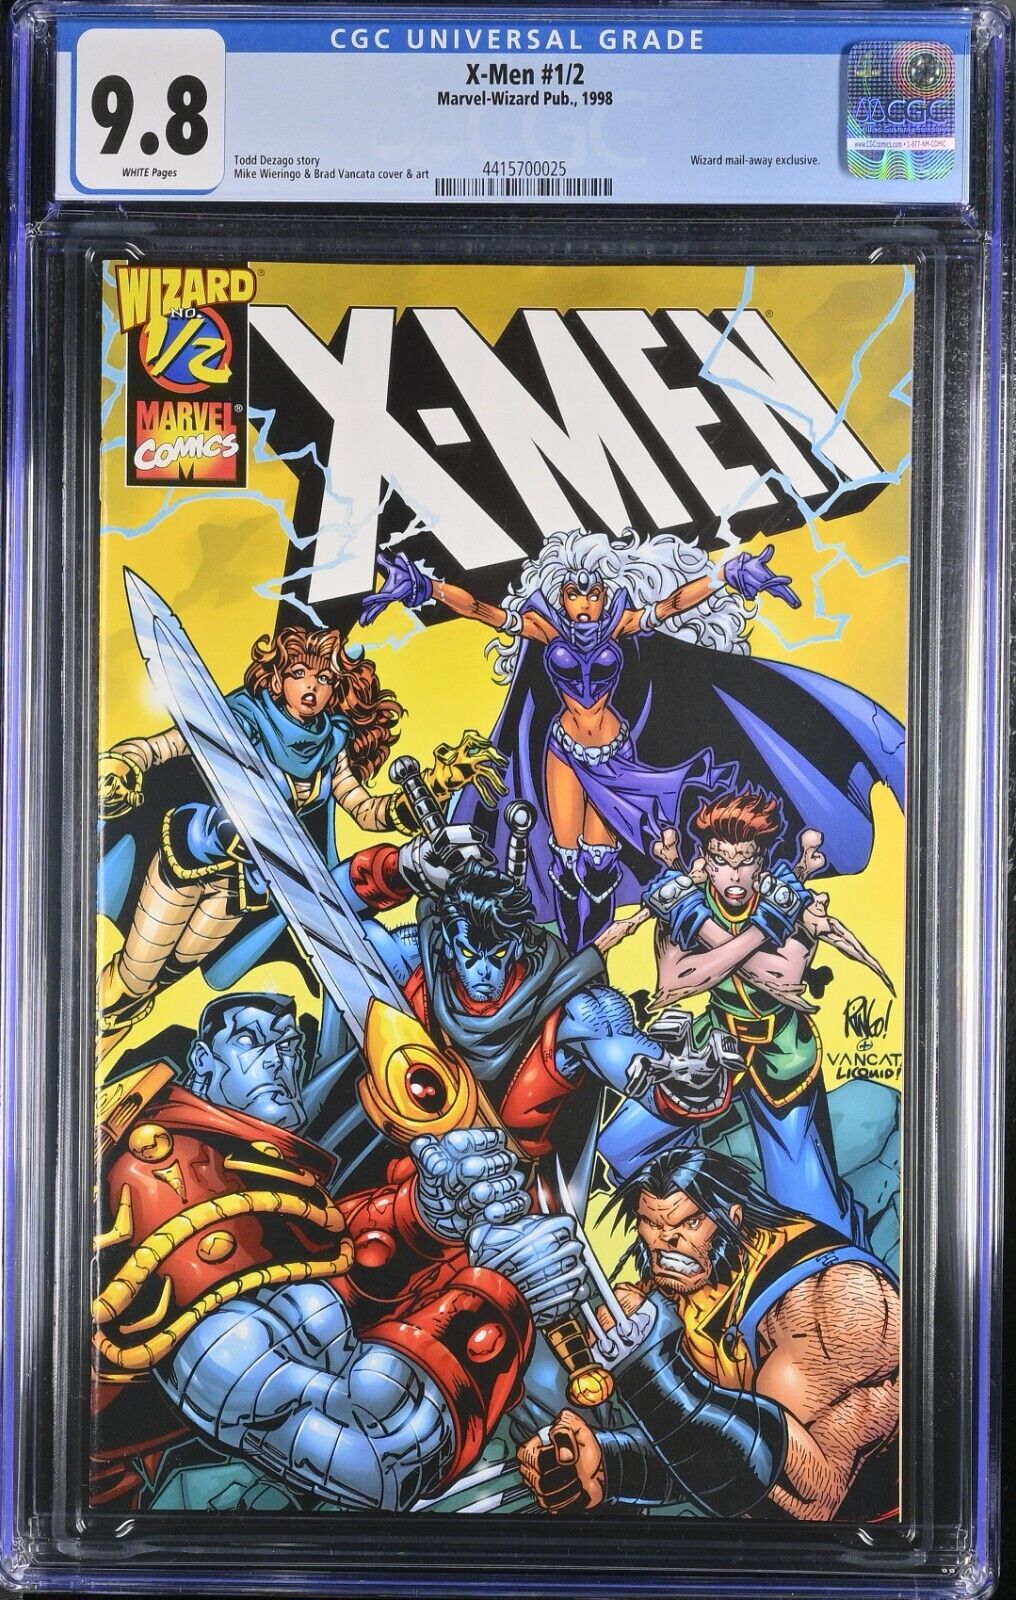 X-MEN #1/2 CGC 9.8 Marvel-Wizard Pub. 1998 Wizard mail-away exclusive